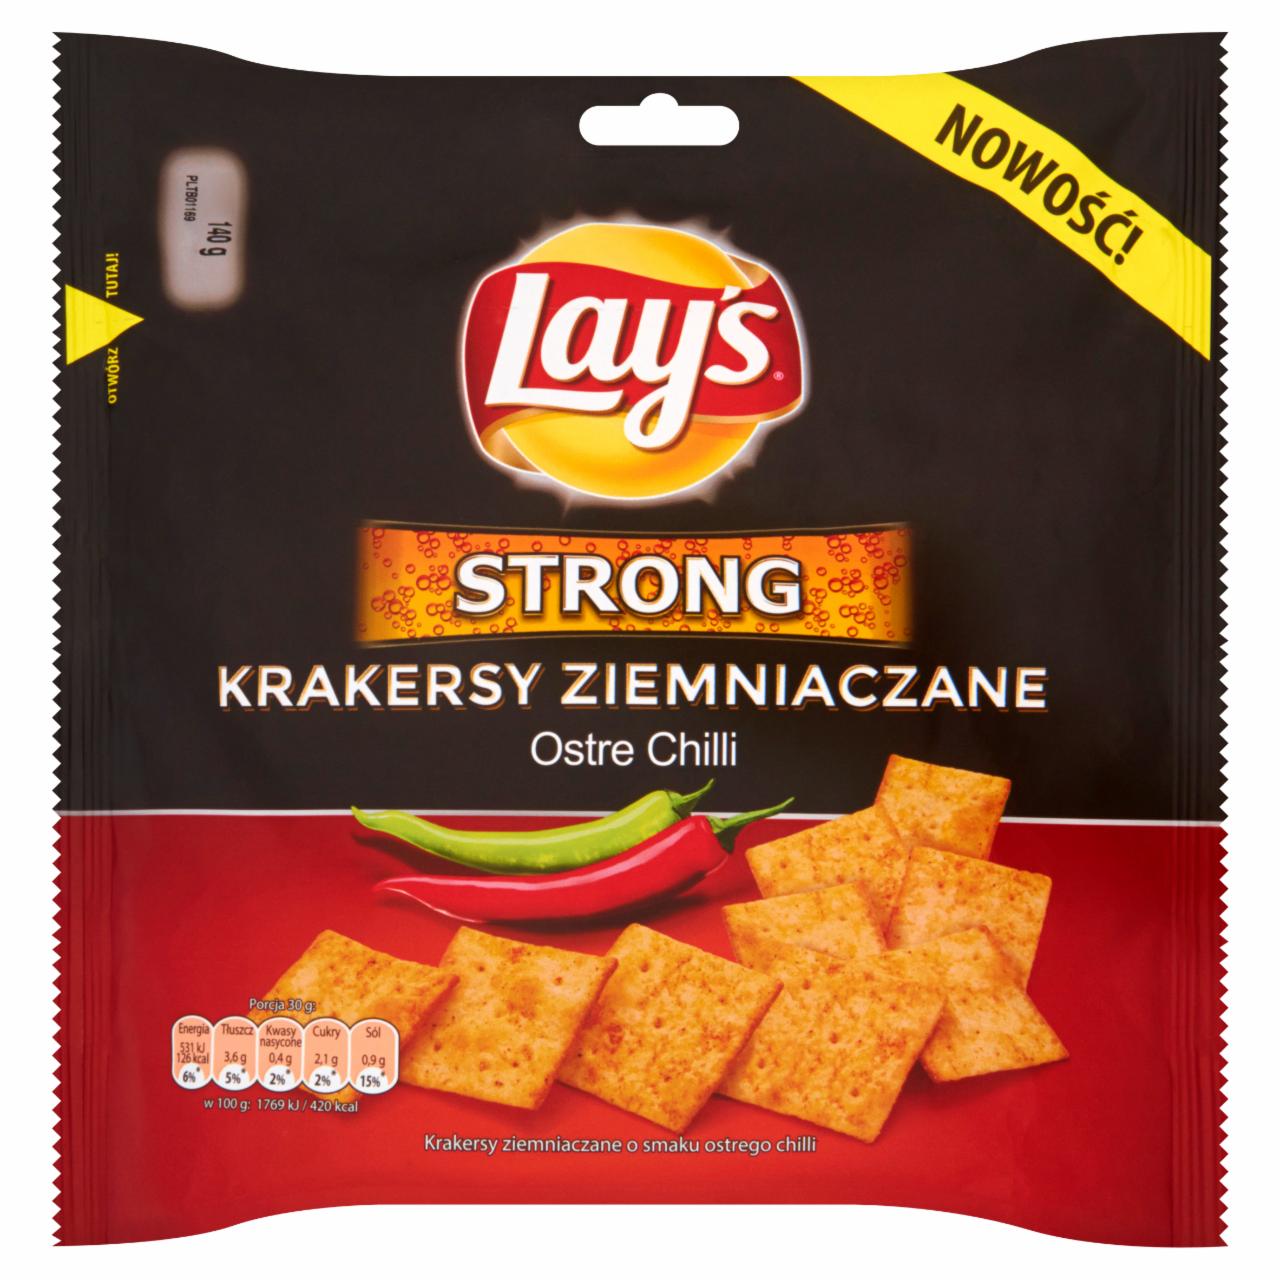 Zdjęcia - Lay's Strong Ostre Chilli Krakersy ziemniaczane 140 g